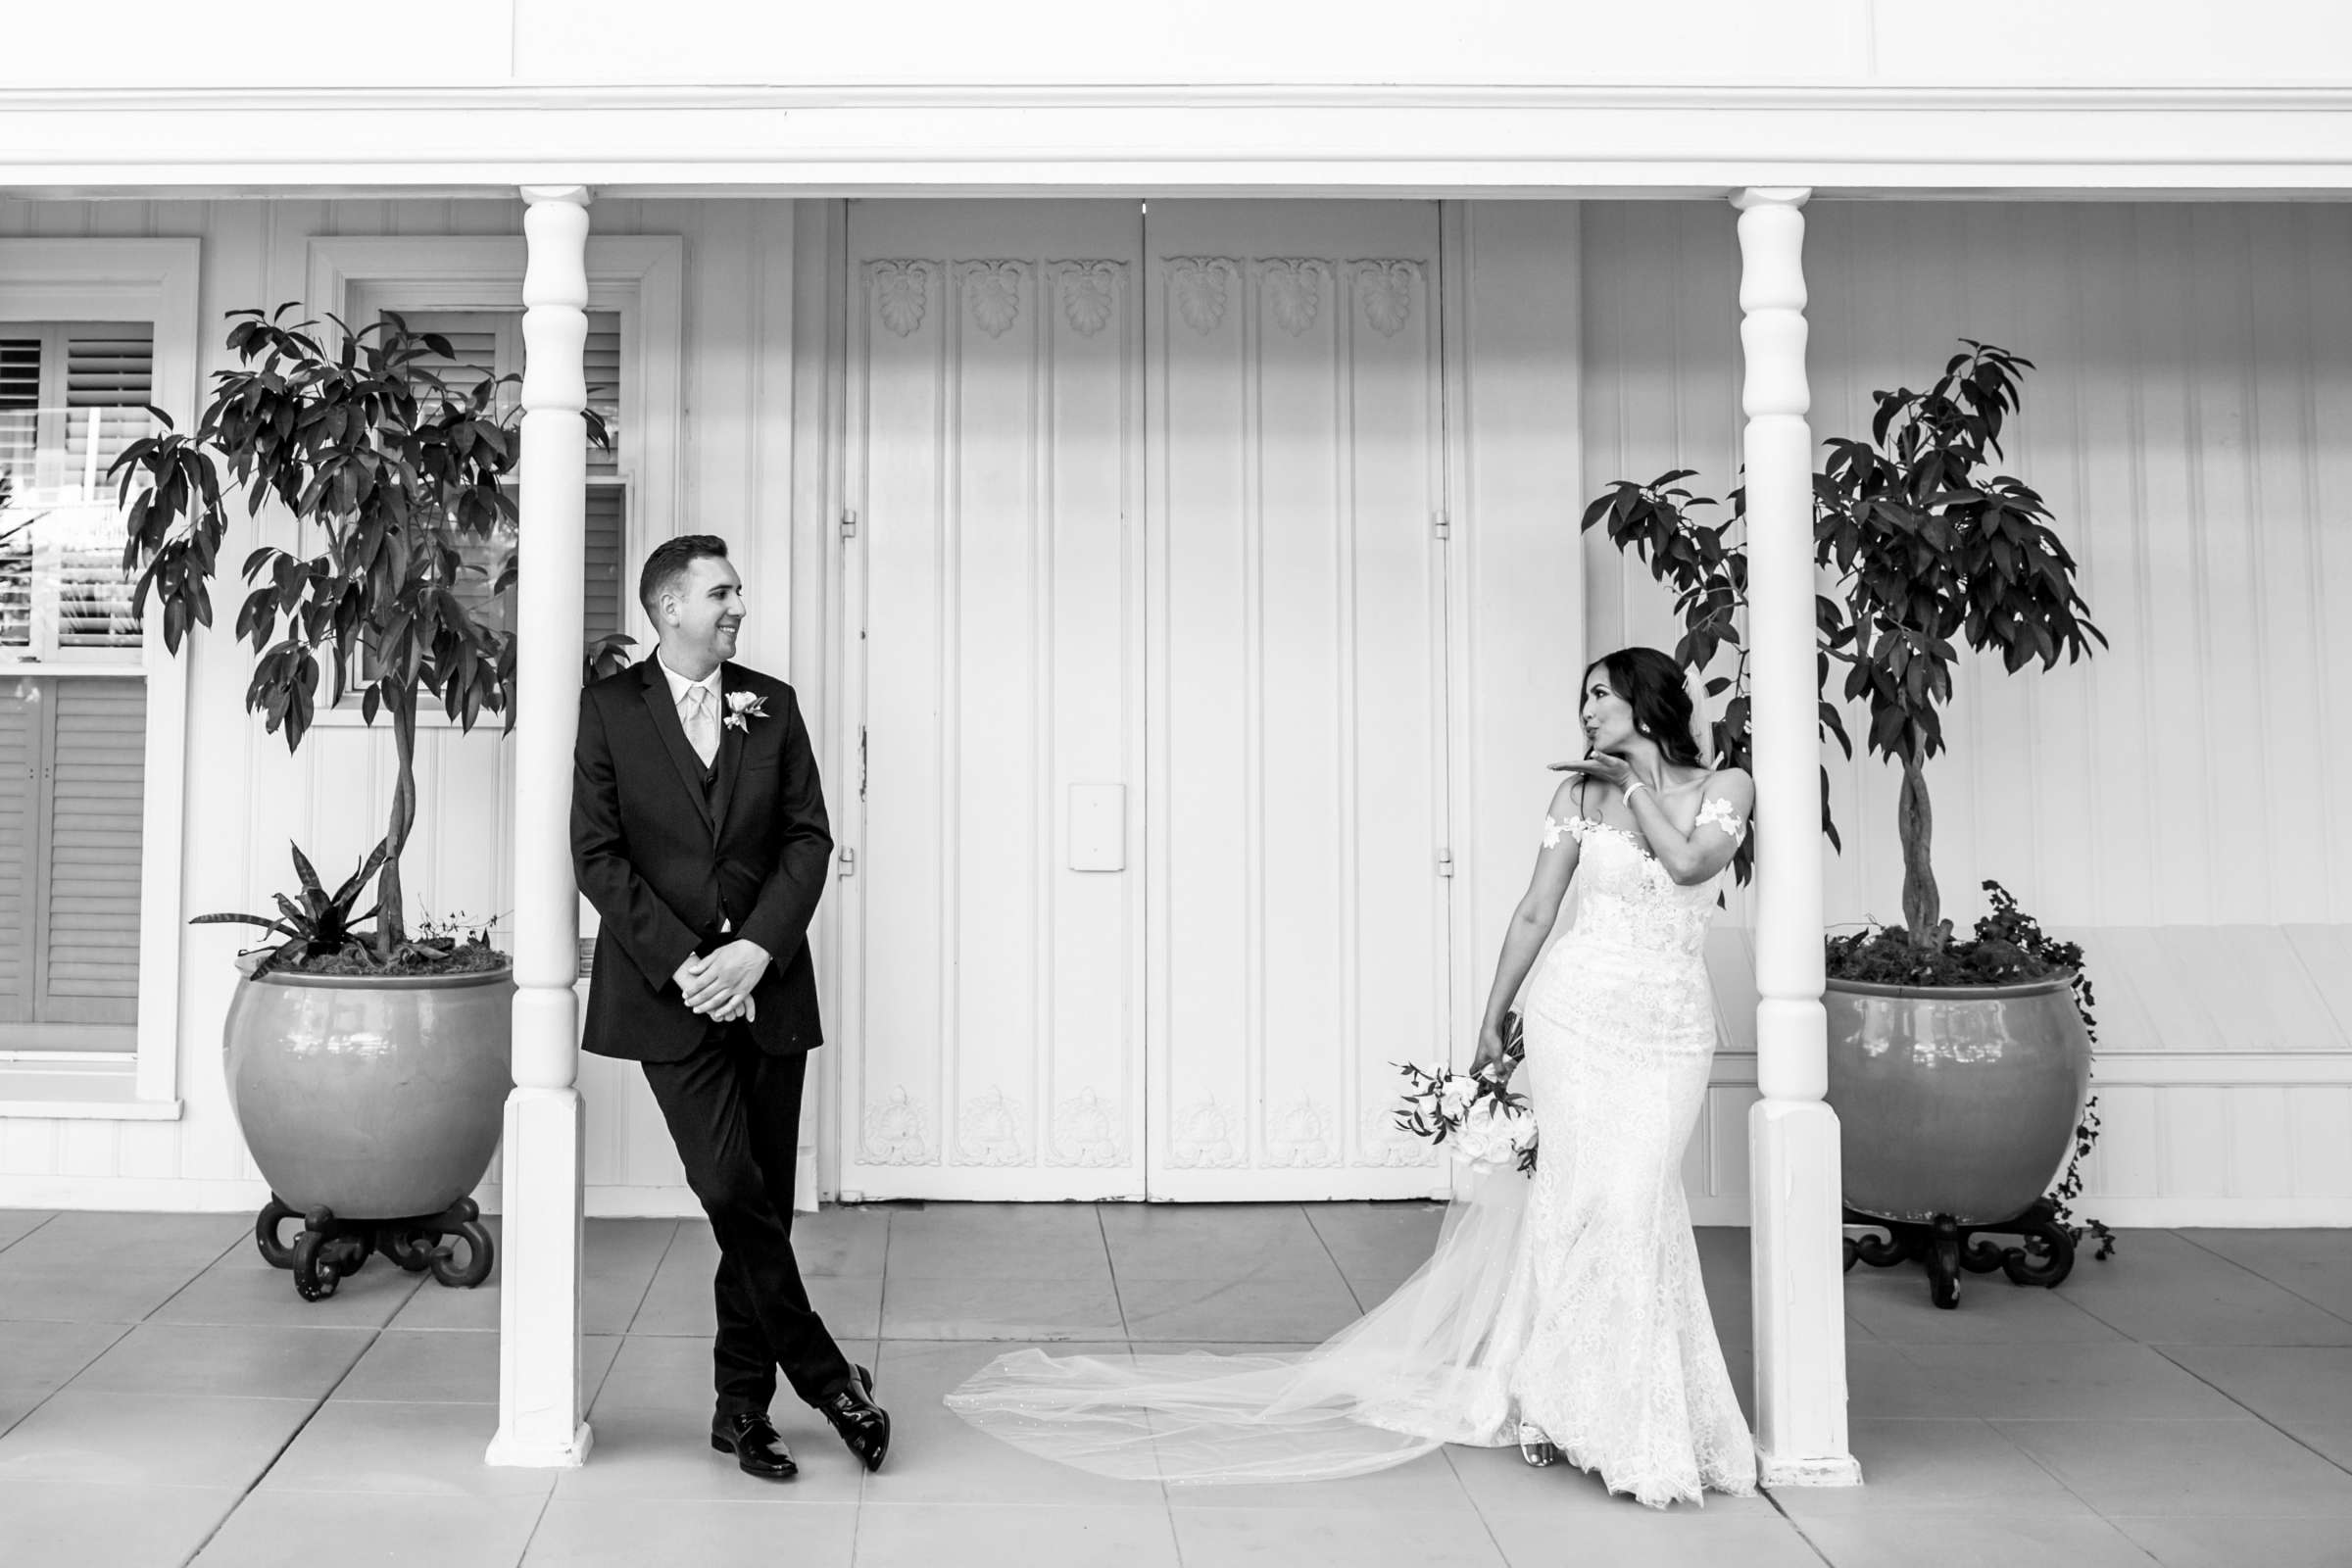 Hotel Del Coronado Wedding, Sarah and Kyle Wedding Photo #16 by True Photography